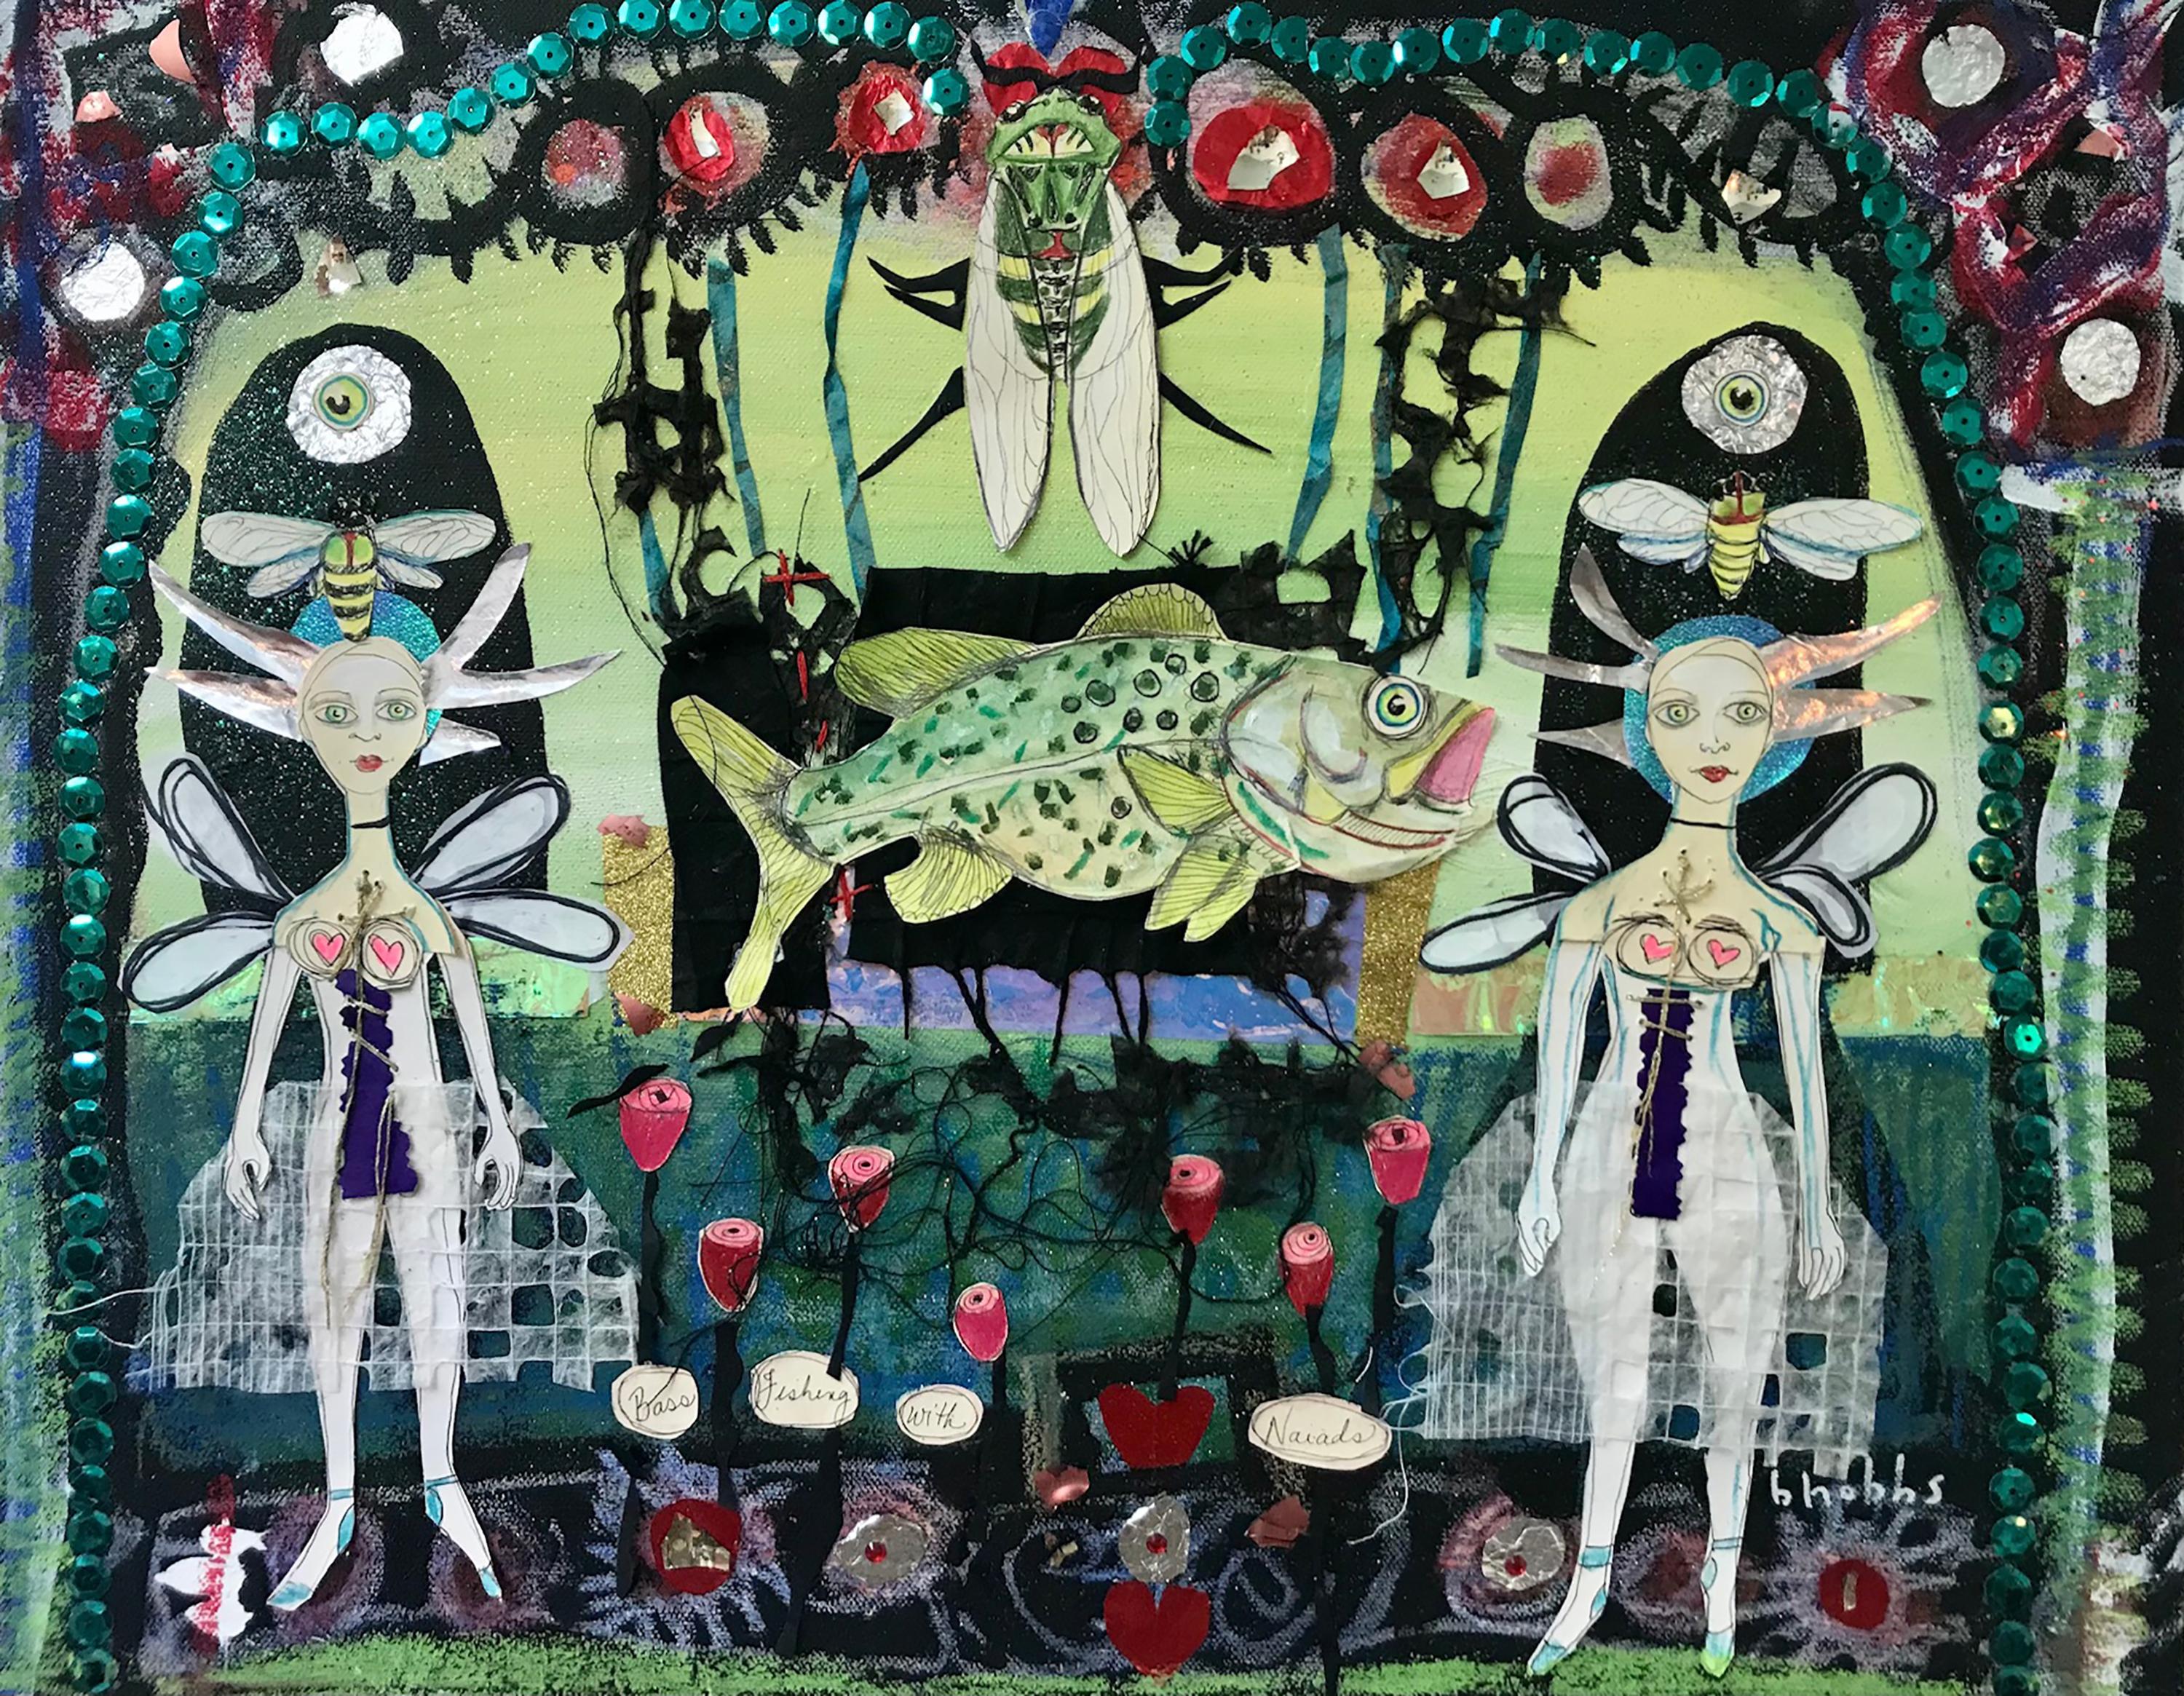 Figurative Art Blair Hobbs - « Bas Fishing with Naiads » (Flaçage à la base avec des naïfs) - collage technique mixte - Southern Art - Marc Chagall